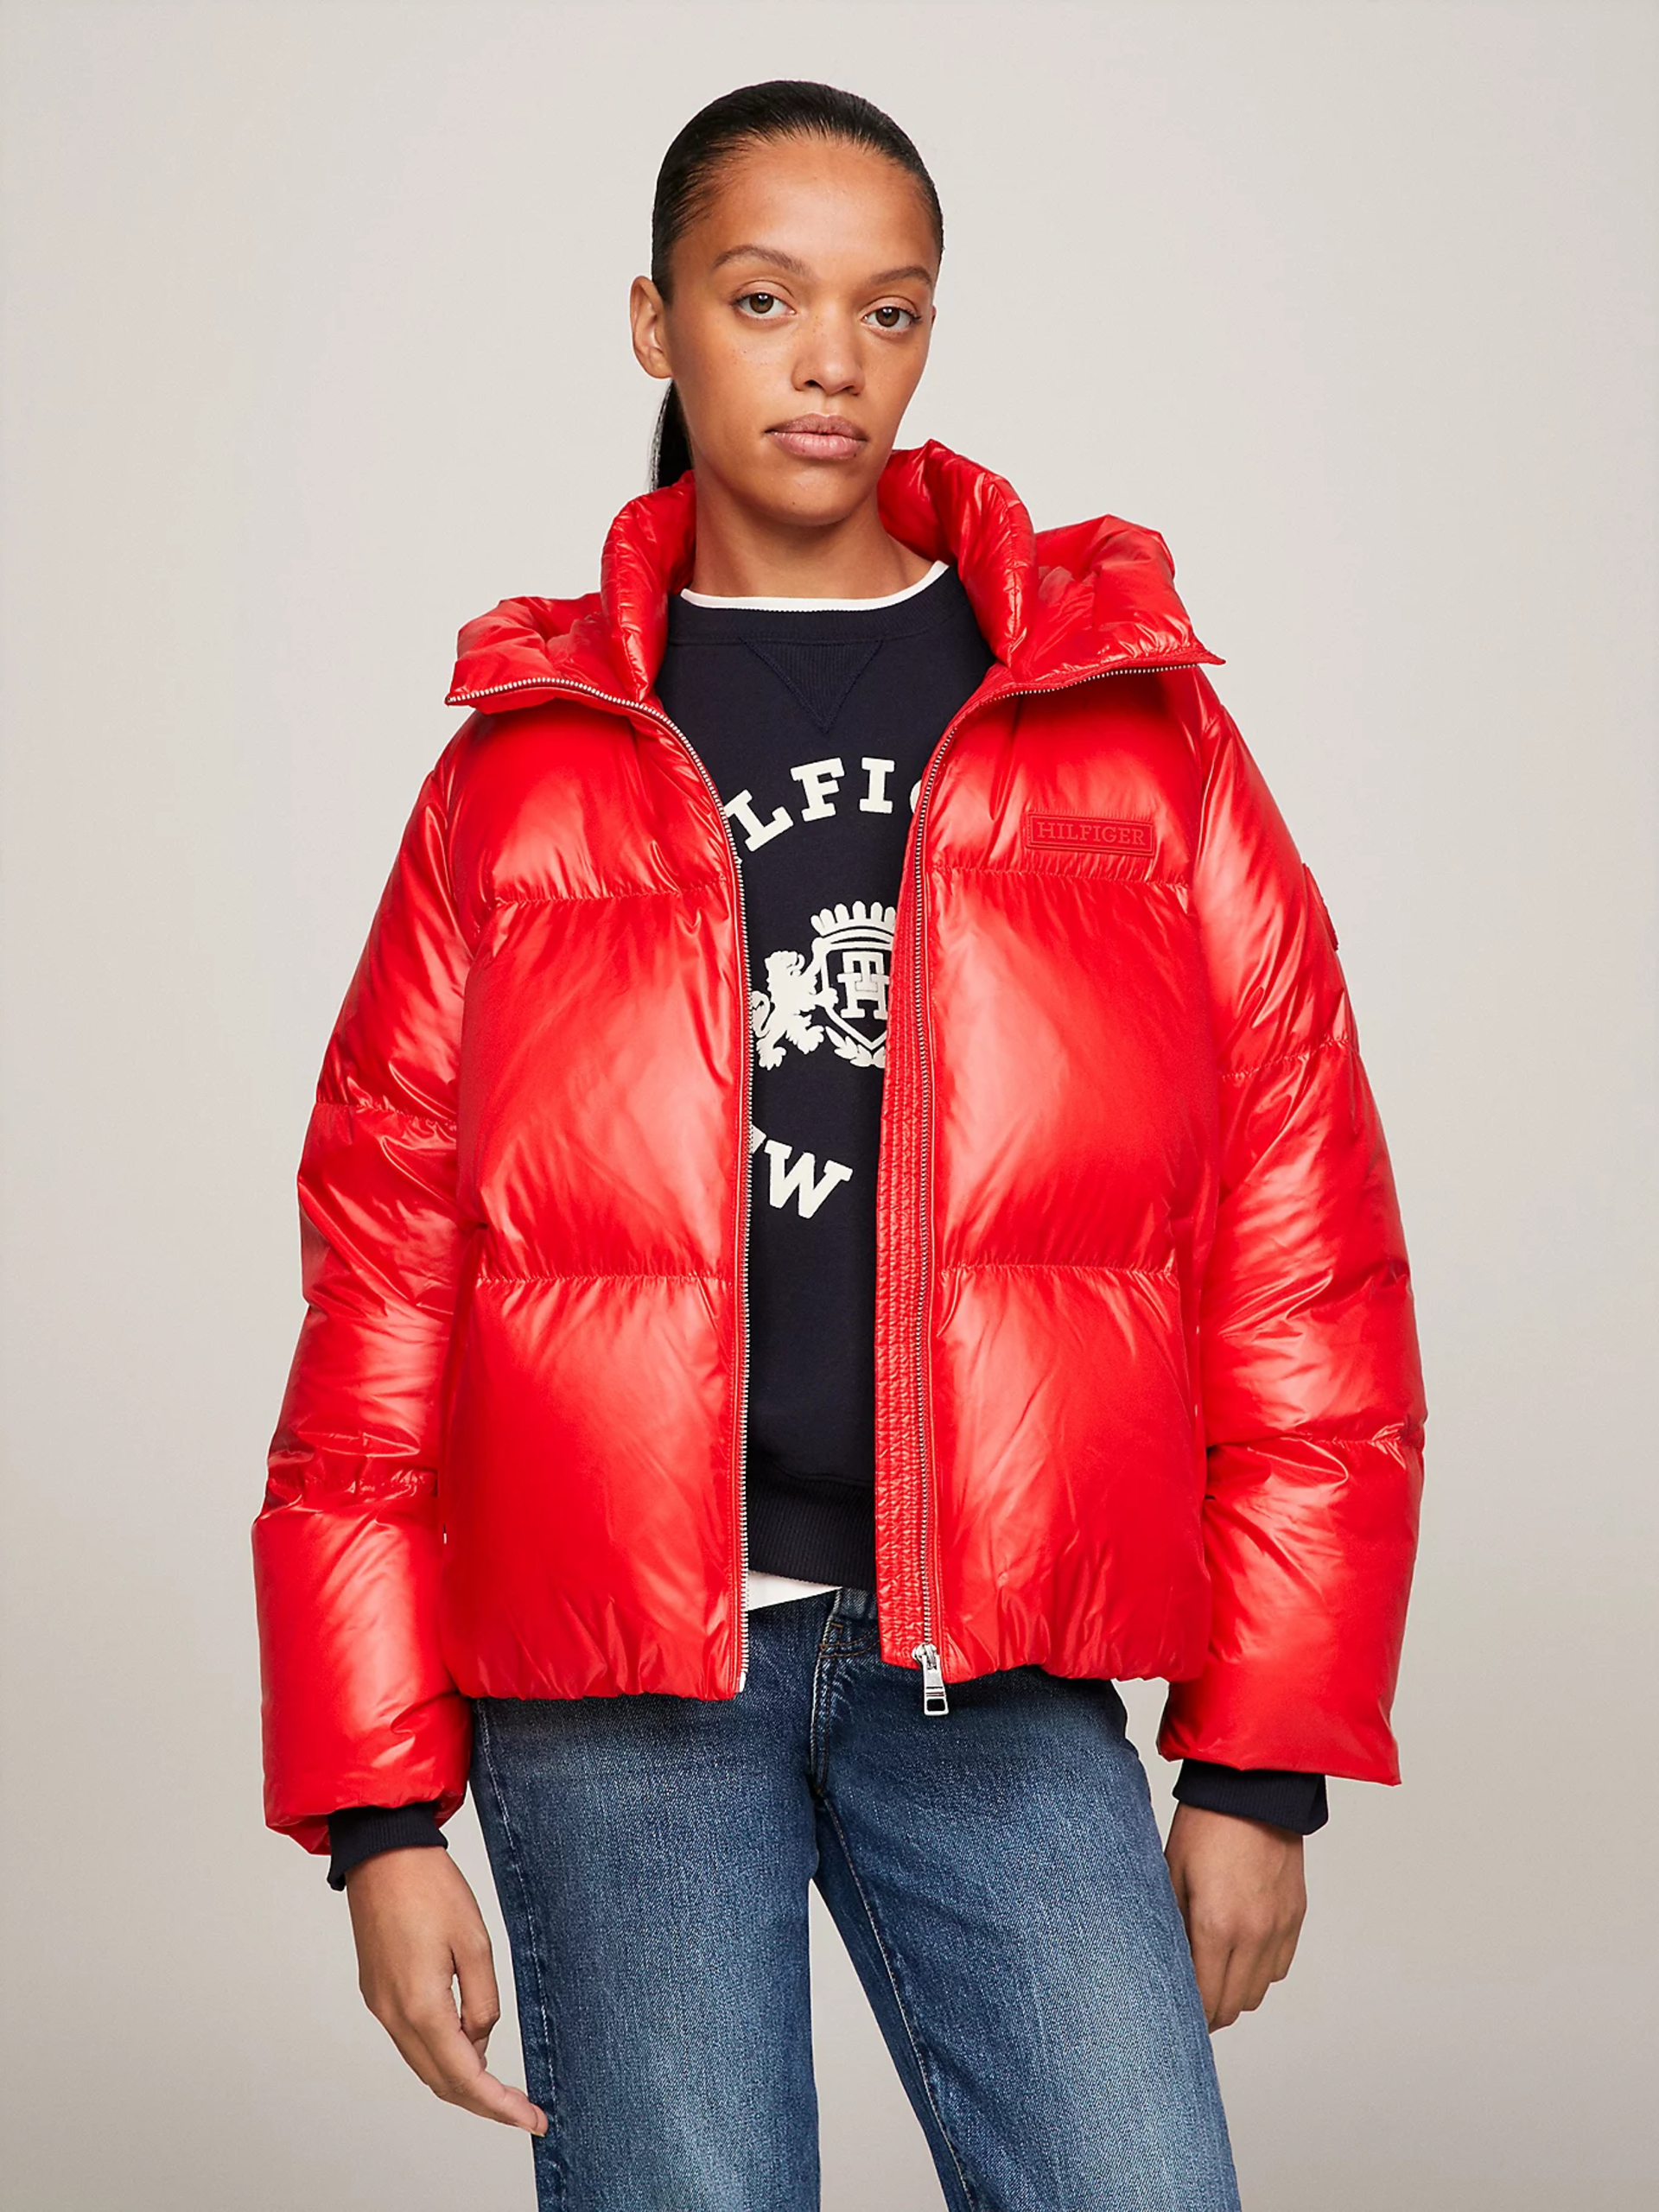 Tommy Hilfiger dámská červená péřová bunda s kapucí - S (SNE)